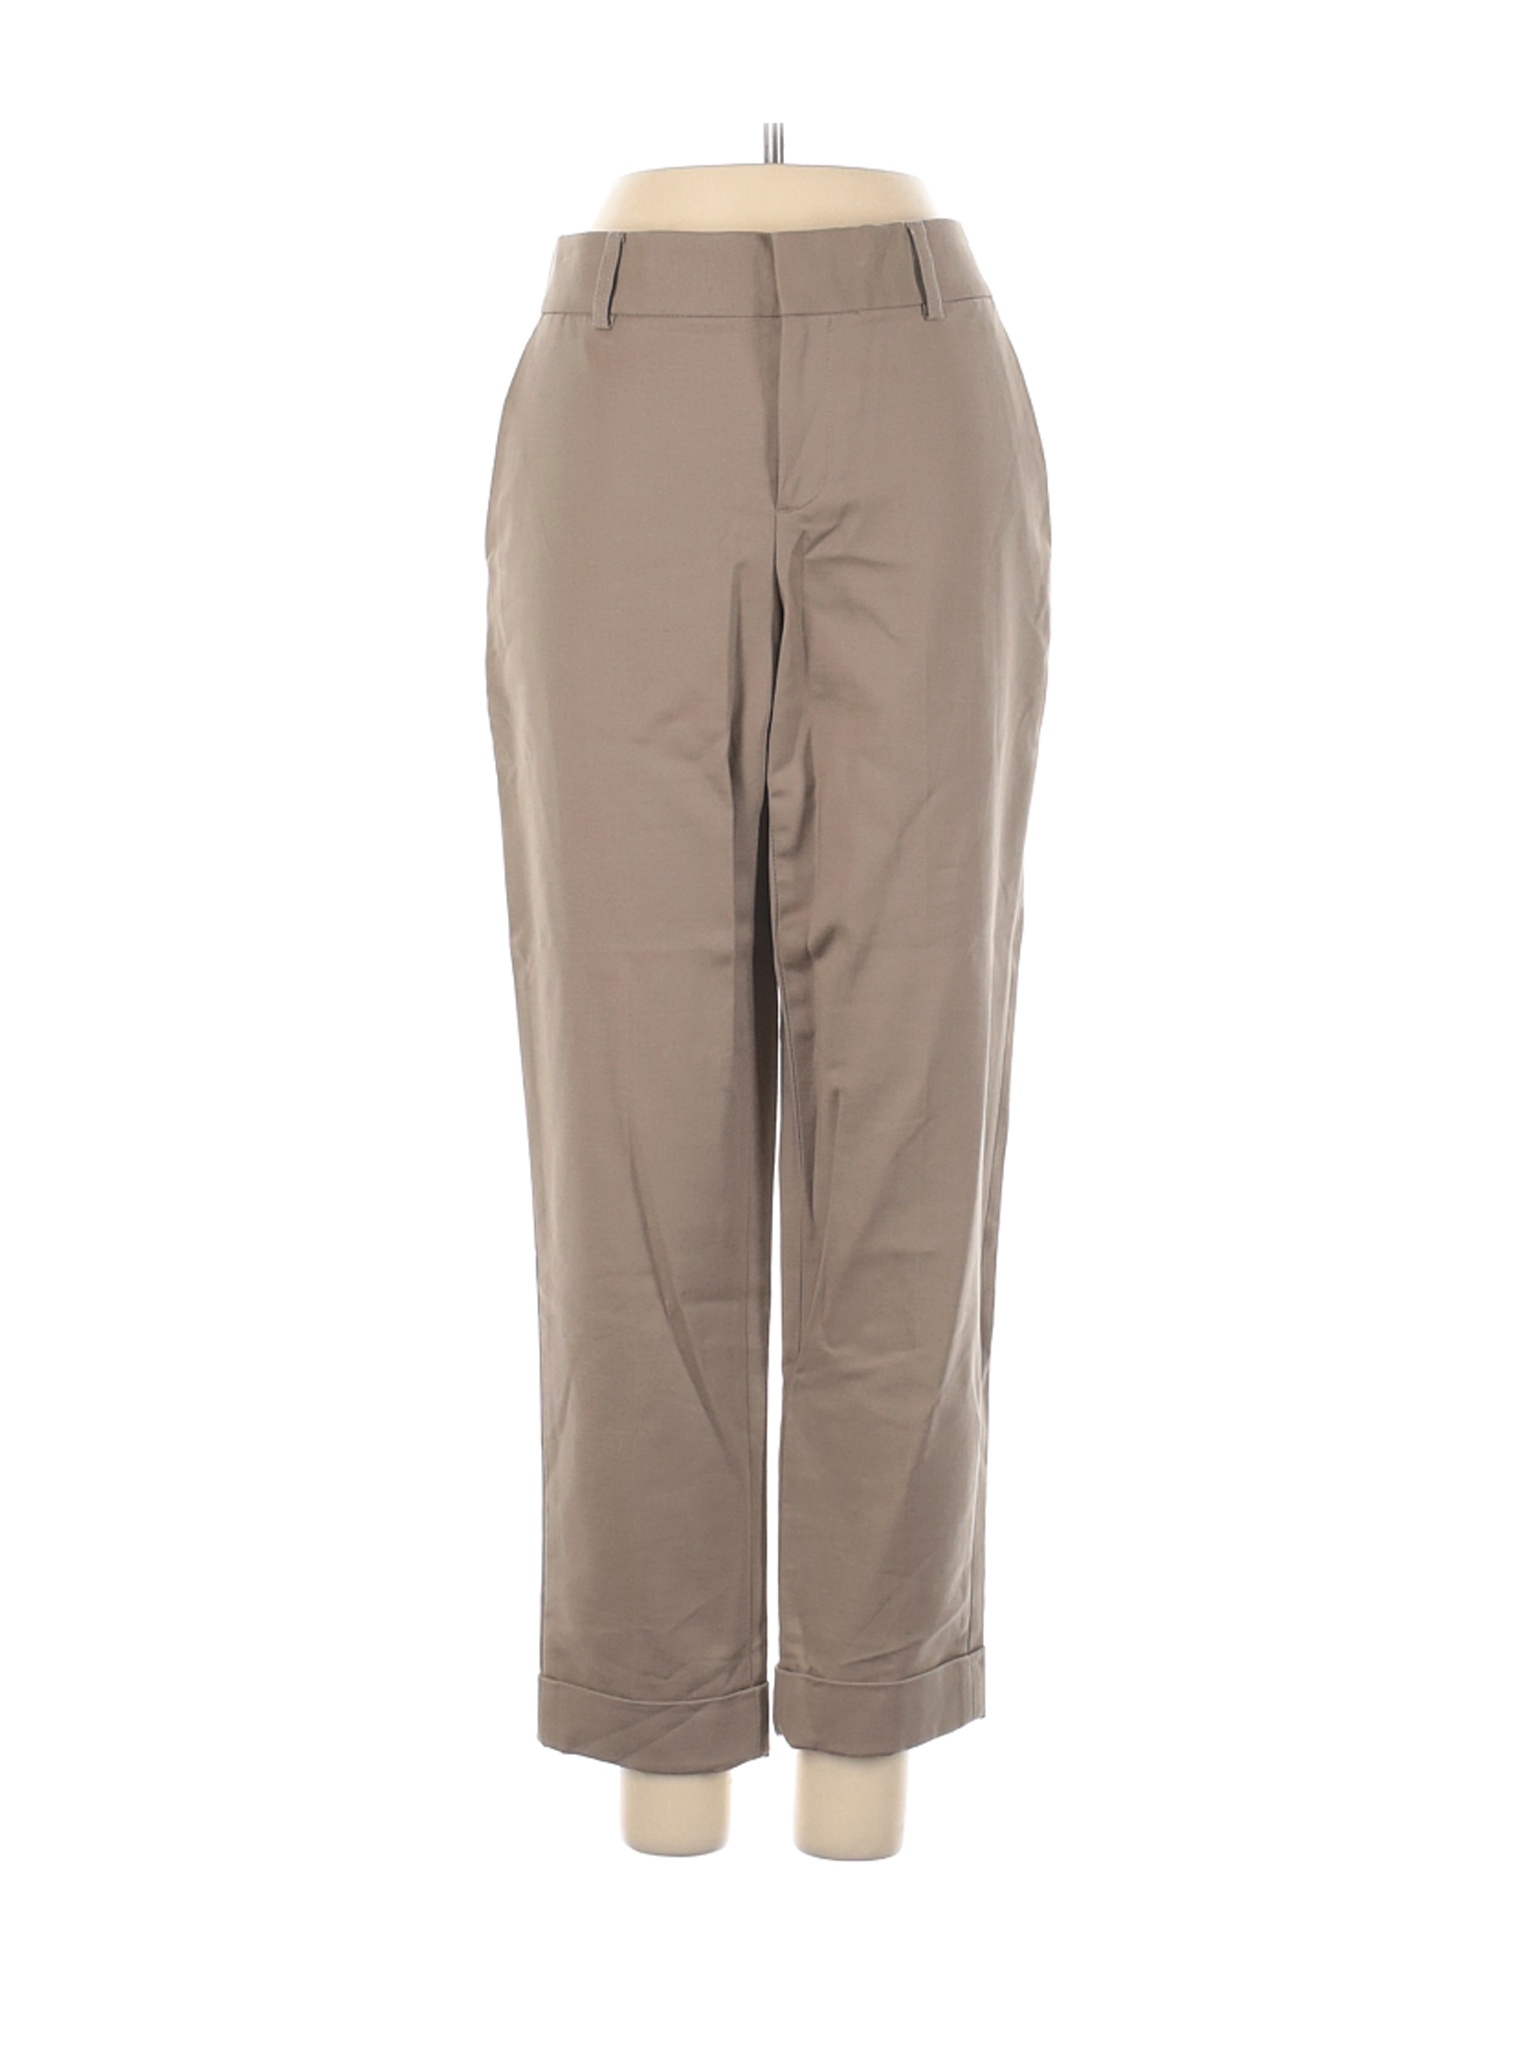 Banana Republic Women Brown Dress Pants 2 | eBay